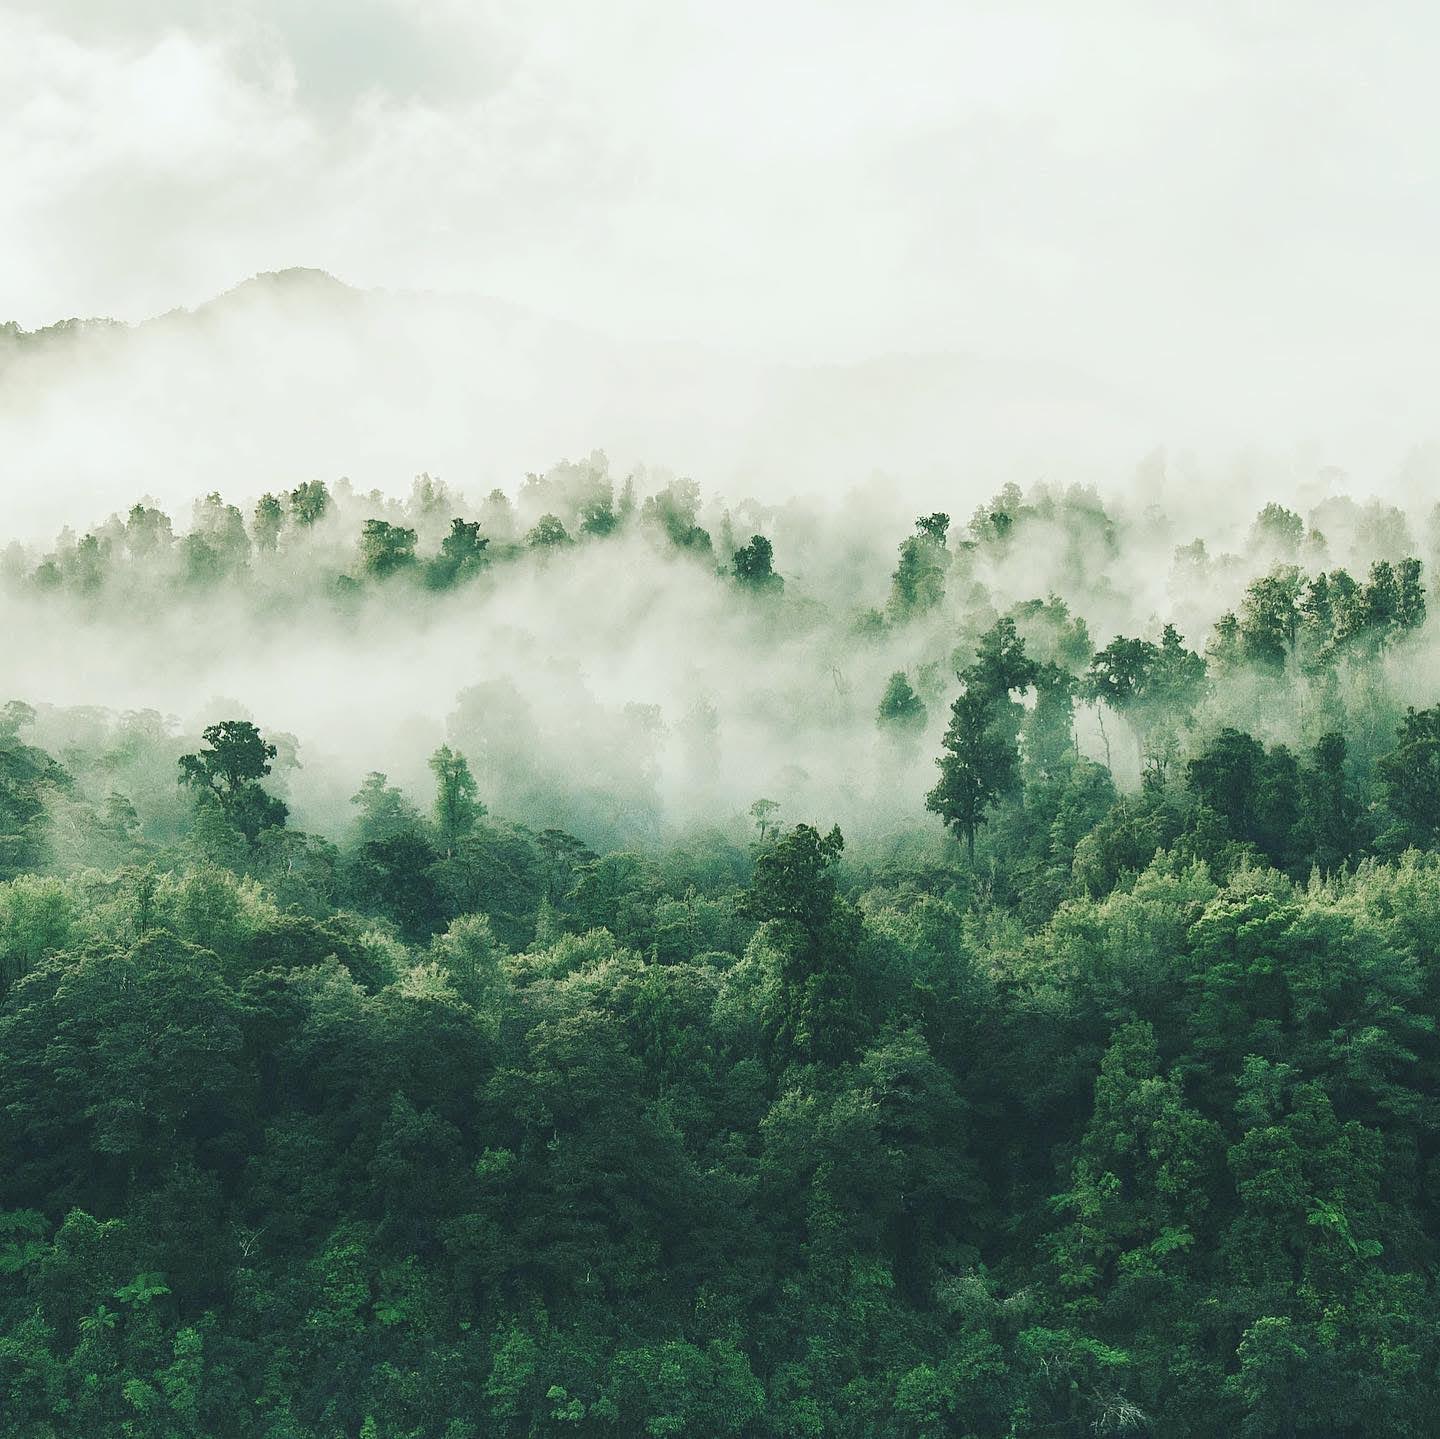 Bild von einem nebelbehangenem Wald